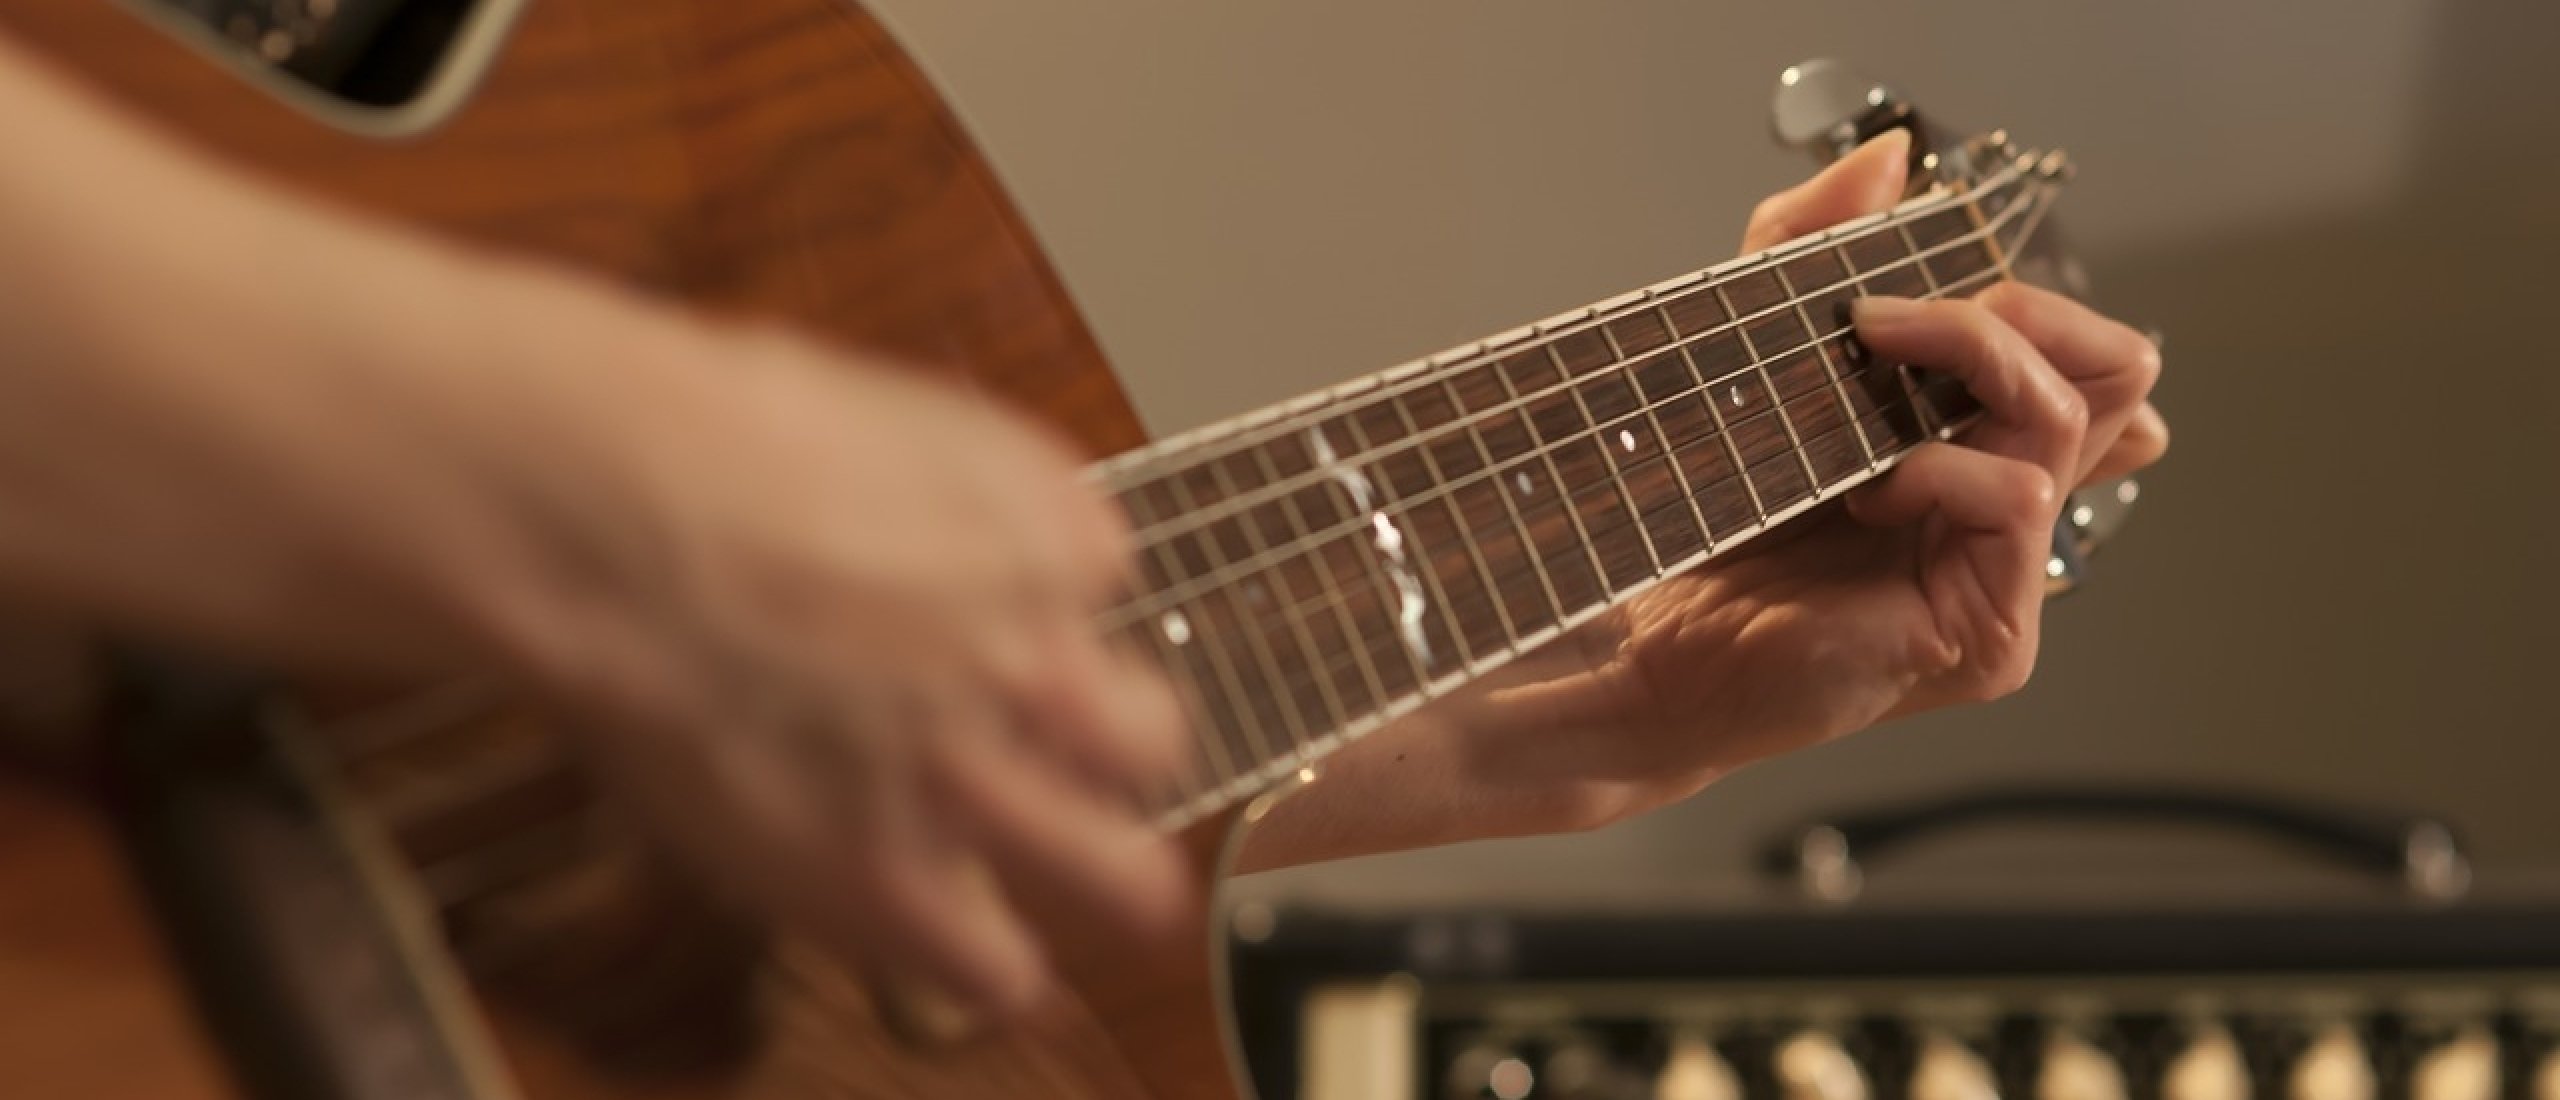 Hoeveel gitaarlessen nodig voor je gitaar kunt spelen?